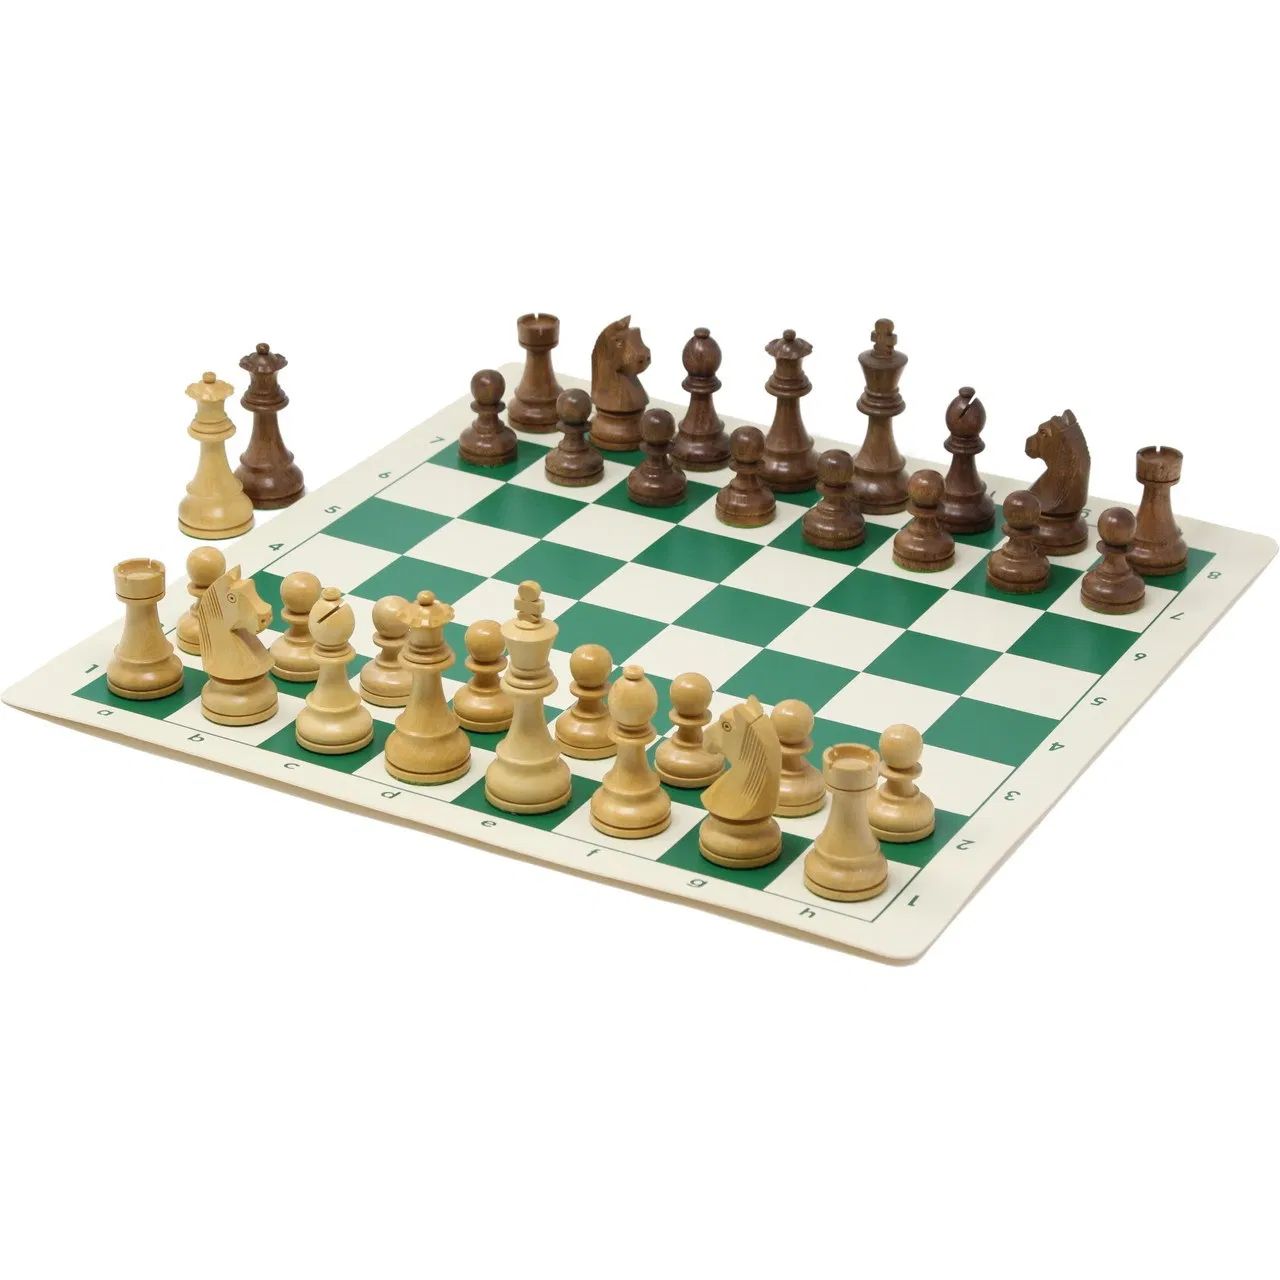 日本チェス連盟公式チェスセット発売 | 日本チェス連盟